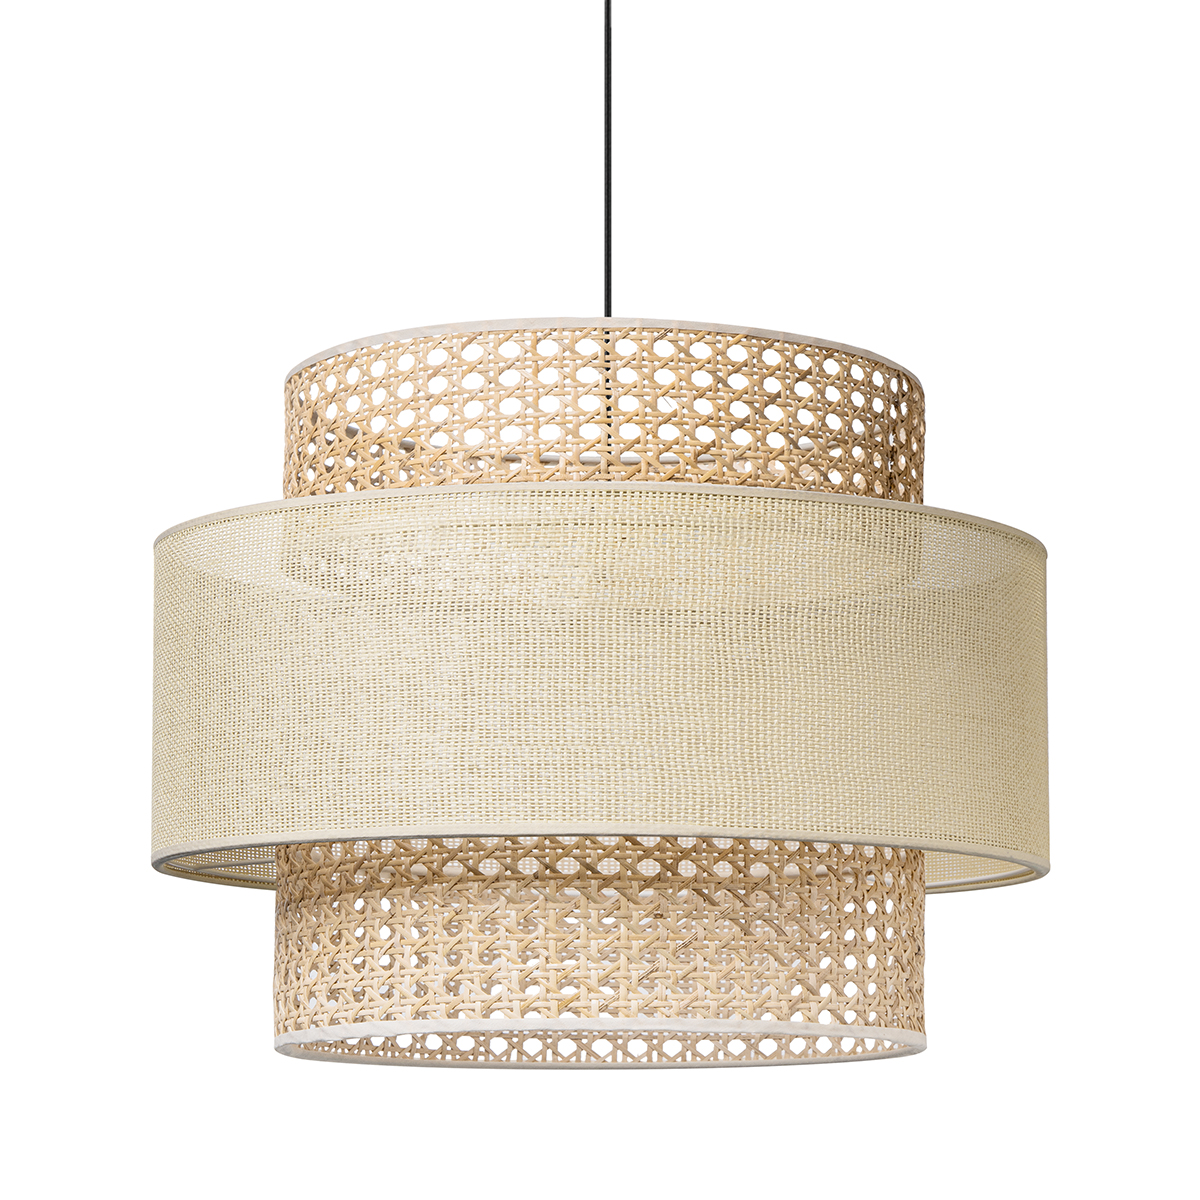 Tangla lighting - TLP7085-01L - LED Pendant lamp 1 Light - paper rattan + linen - natural - yarn - large - E27